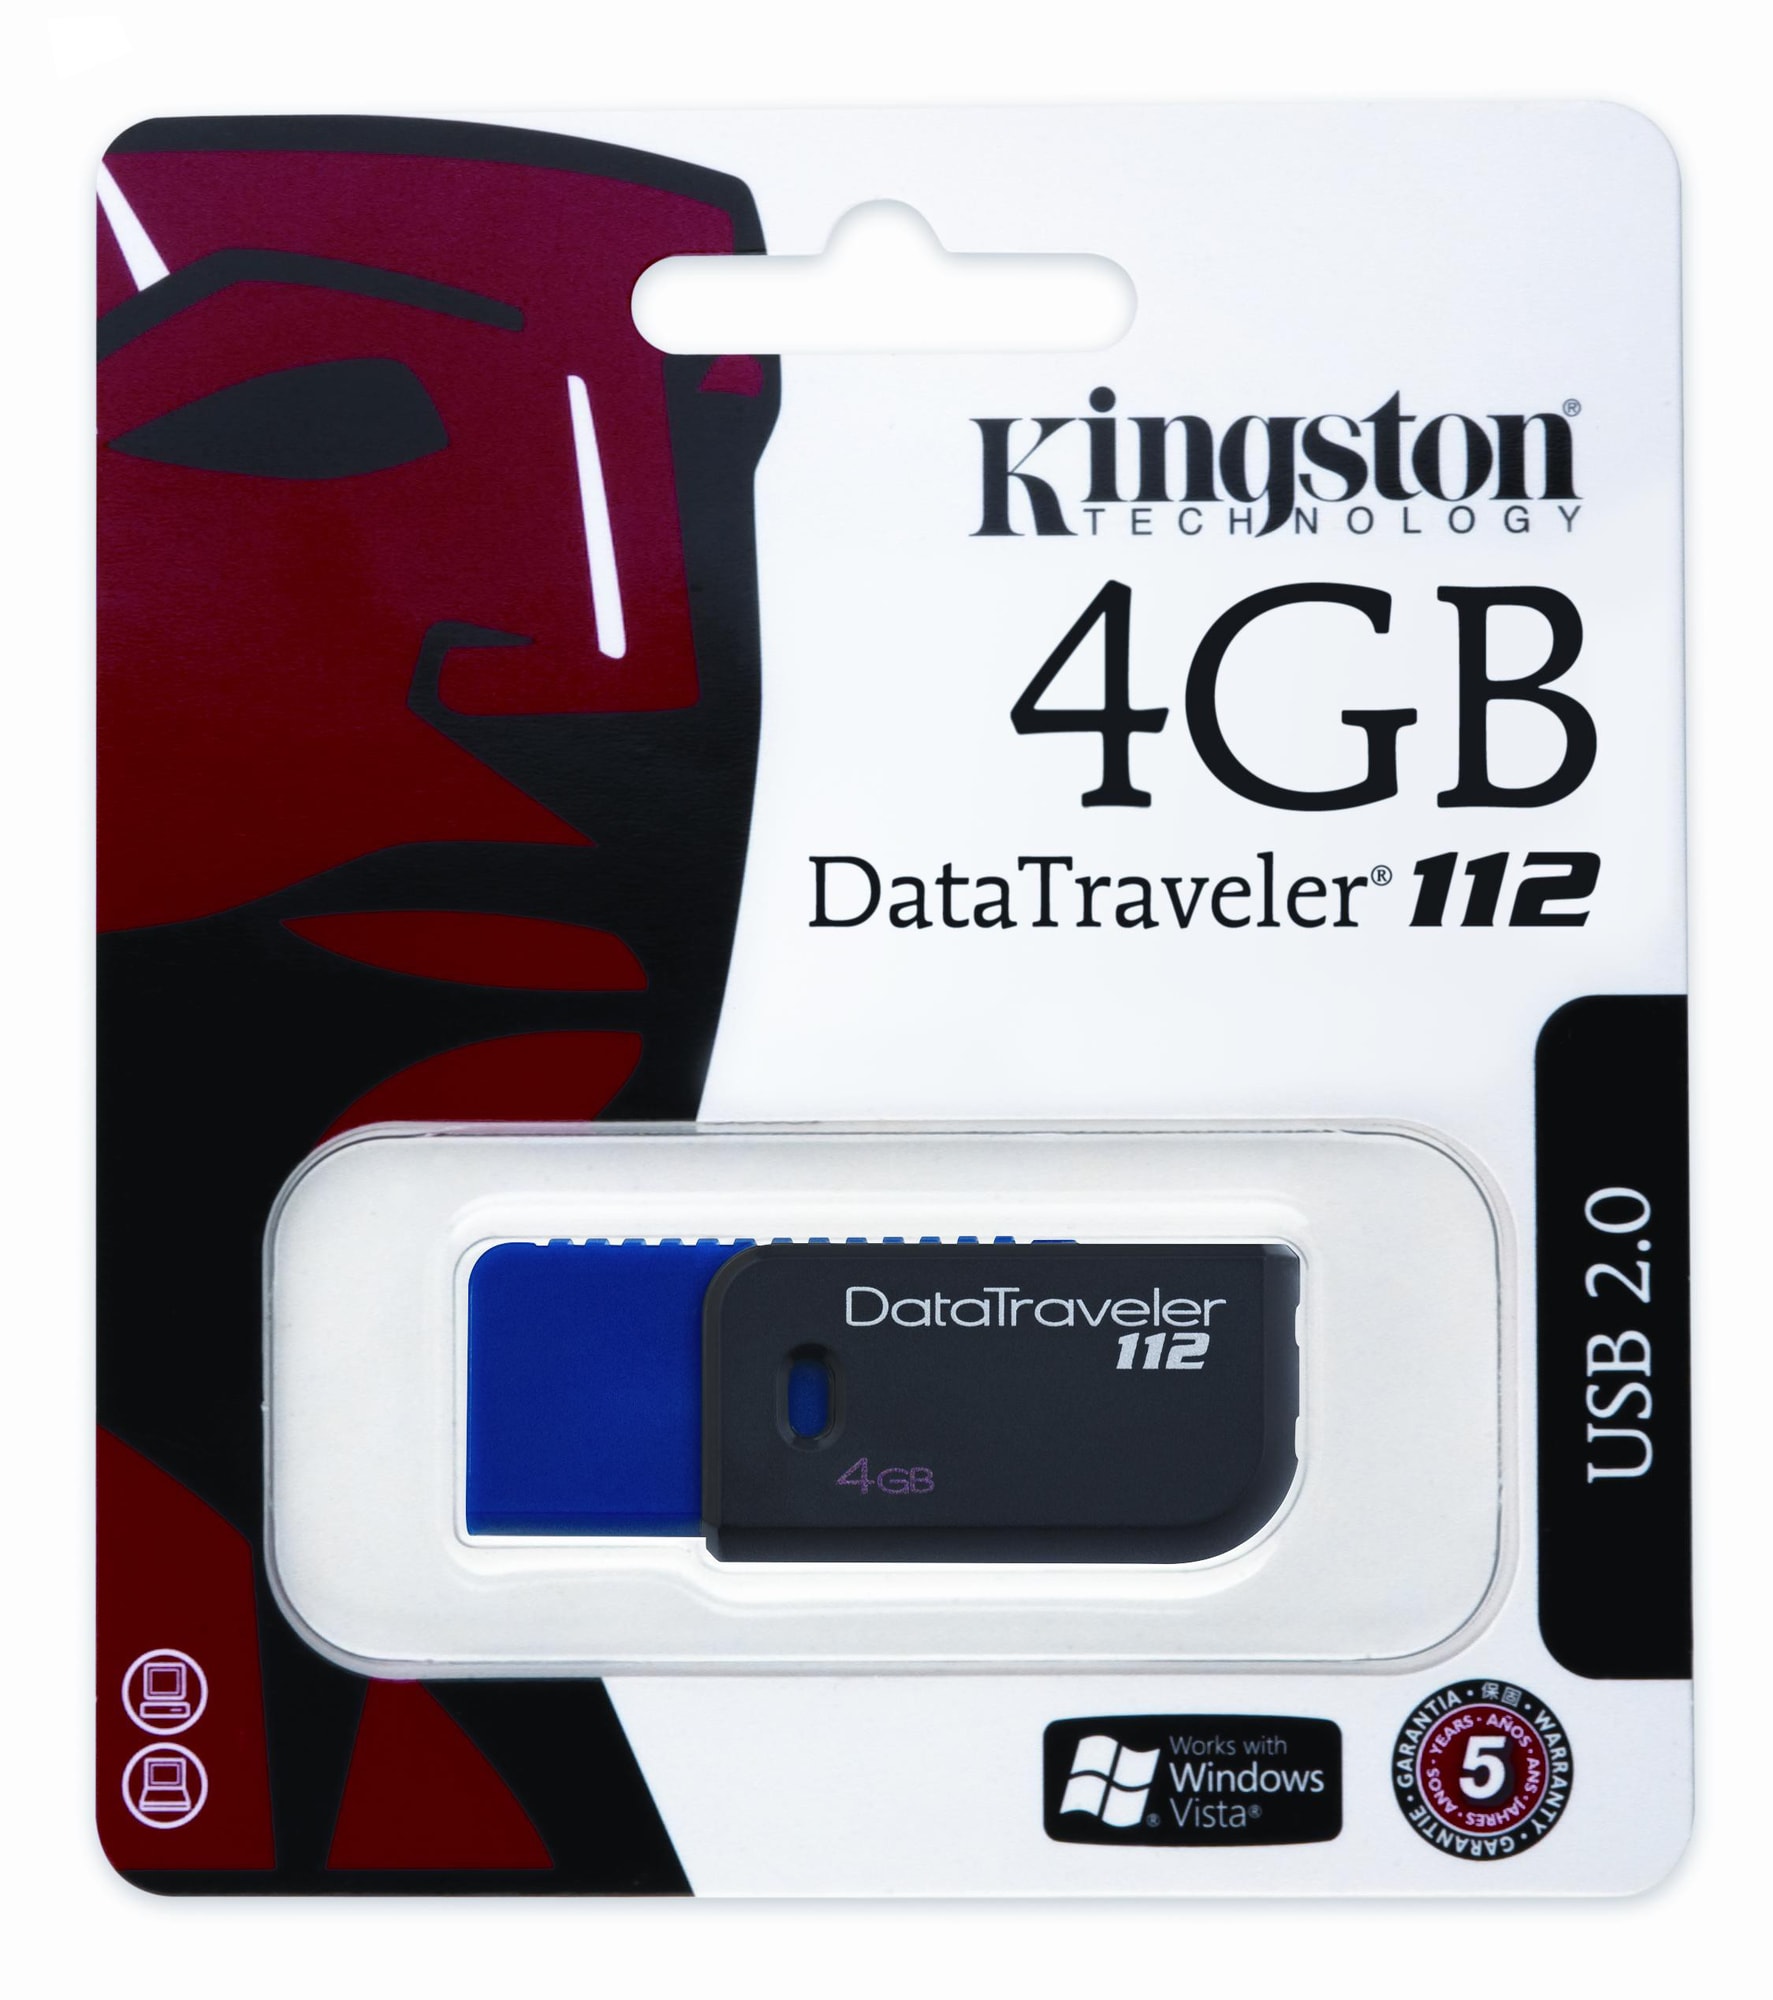 Kingston 4 GB DataTraveler 112 minnepenn - Elkjøp